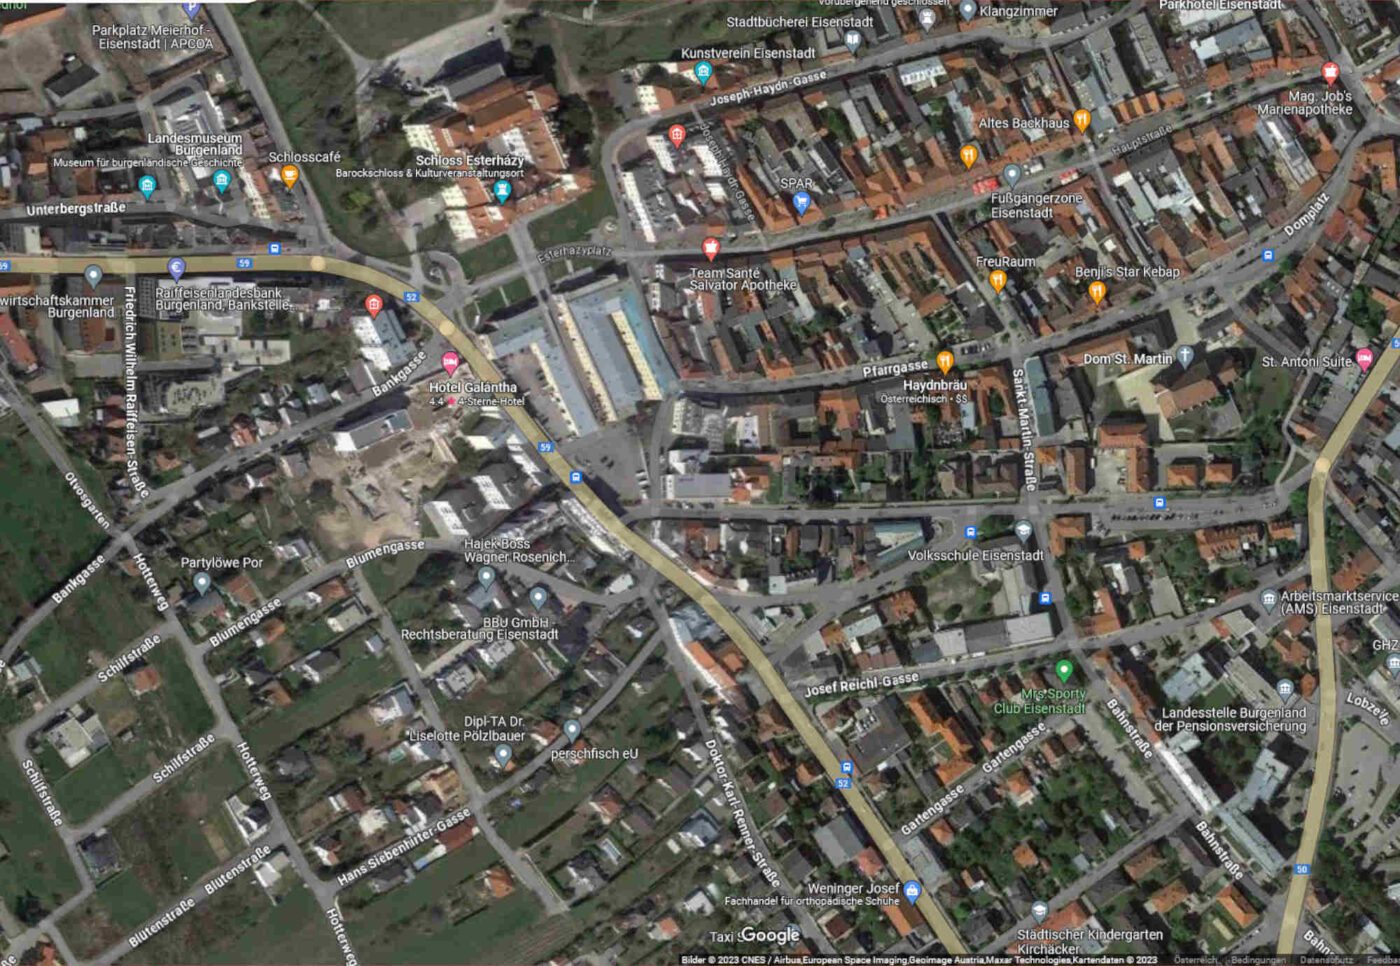 Die diesjährige Wintersynode der Evangelischen Kirche tagt in Eisenstadt. Foto: google-Maps/Screenshot